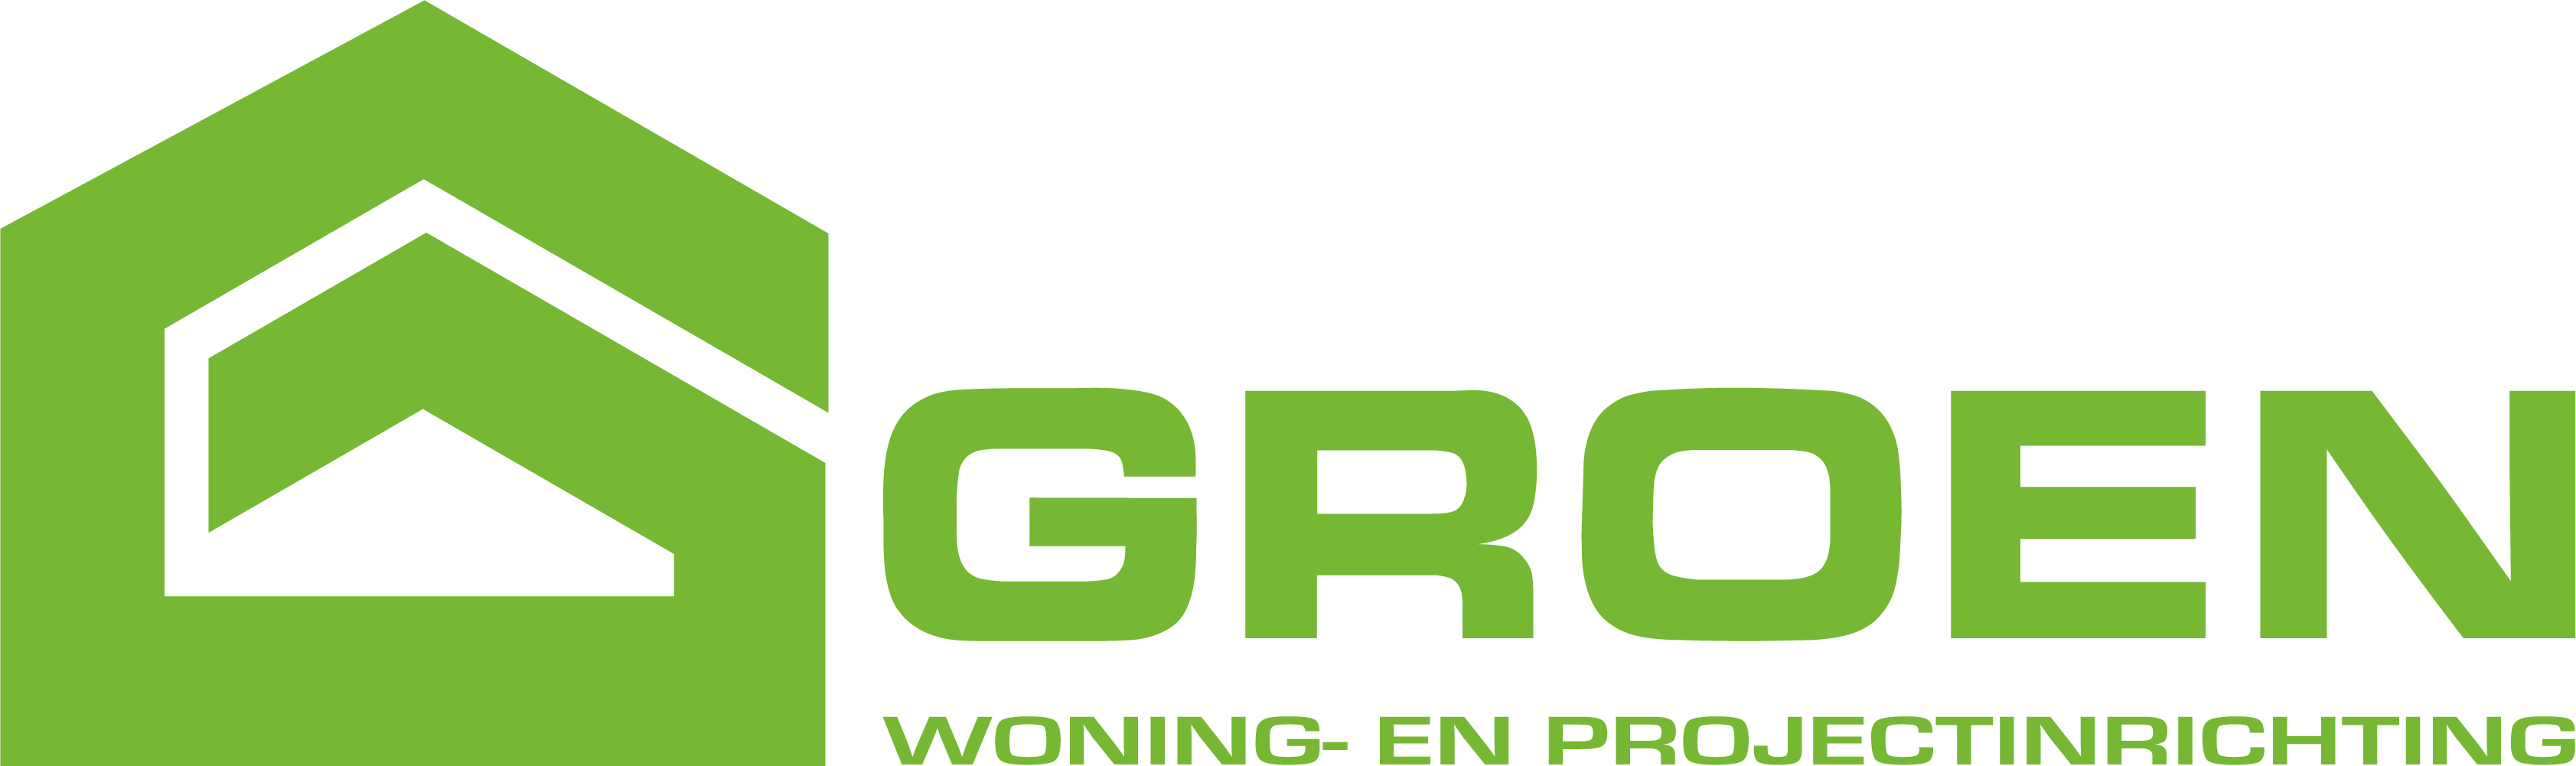 Groen woning- en projectinrichting logo